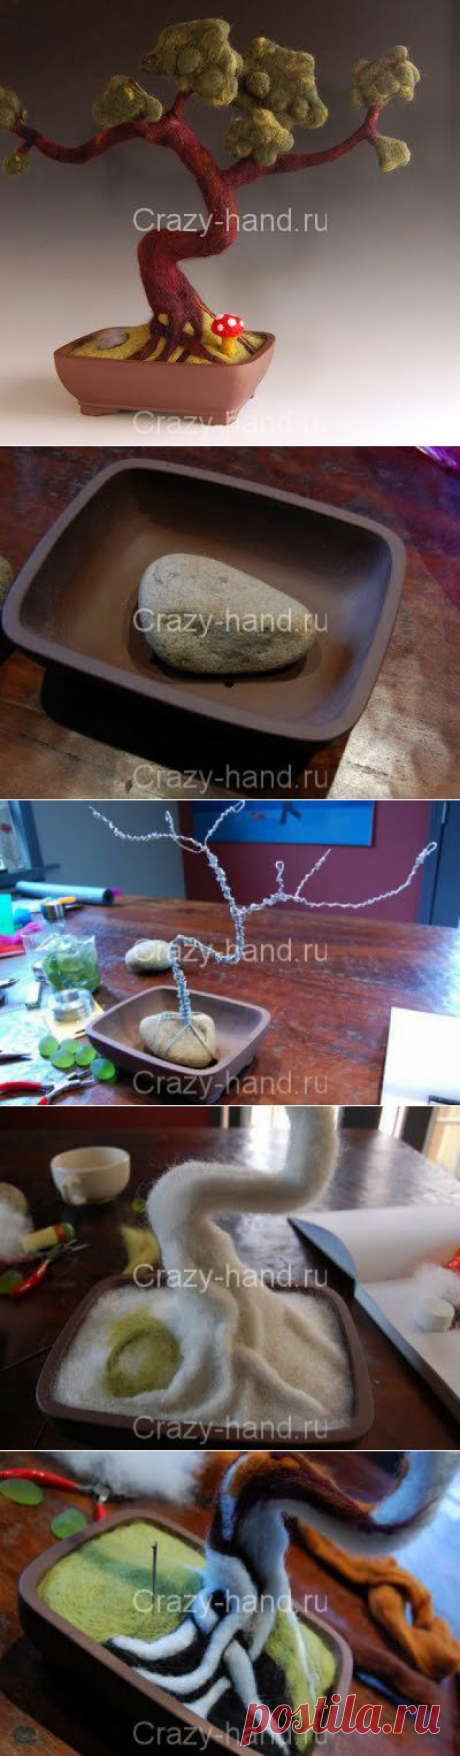 Мастер-класс: дерево бонсай | Crazy-hand.ru